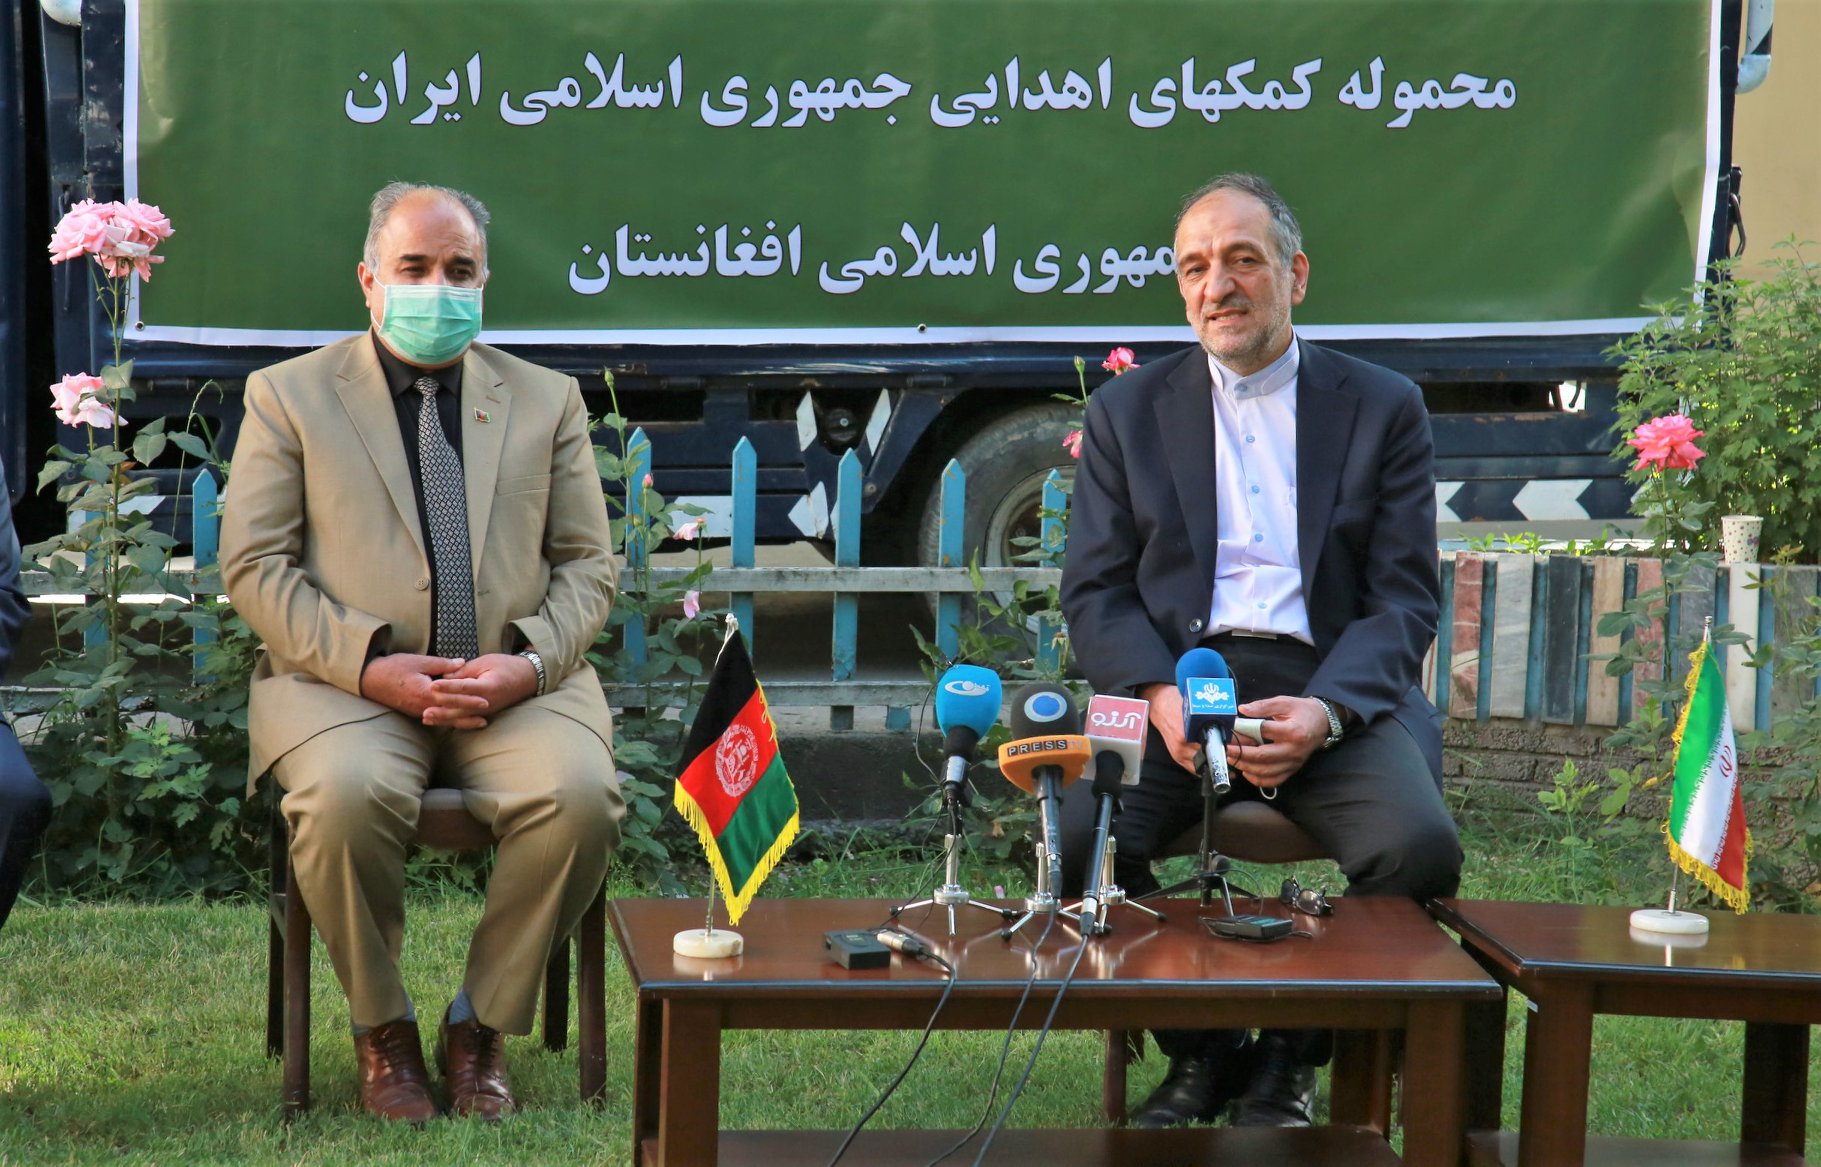 تحویل محموله تجهیزات پزشکی ایران به وزارت بهداشت افغانستان